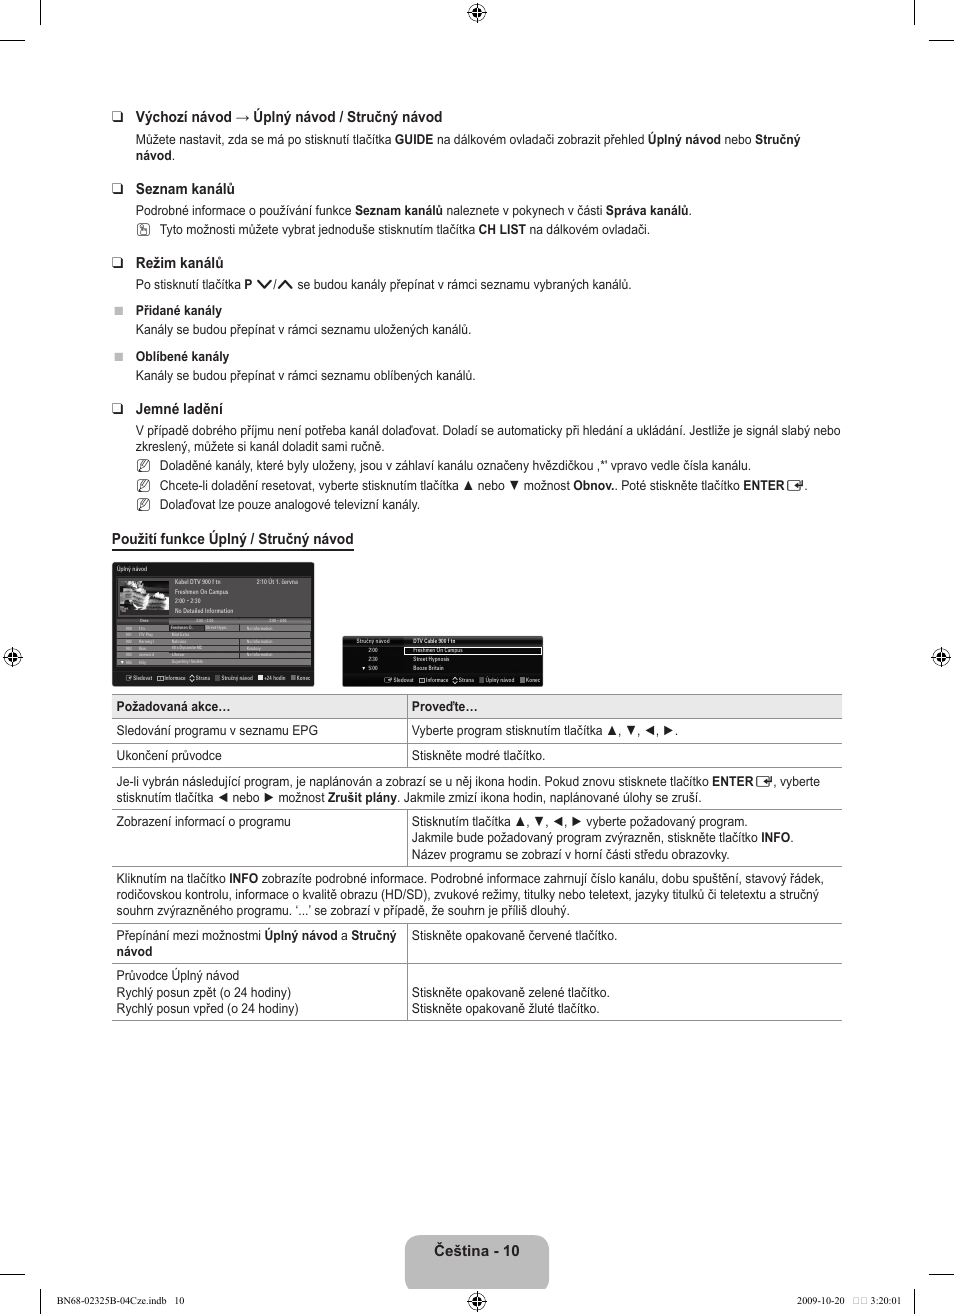 Seznam kanálů, Režim kanálů, Jemné ladění | Použití funkce úplný / stručný návod | Samsung LE37B650T2W User Manual | Page 420 / 680